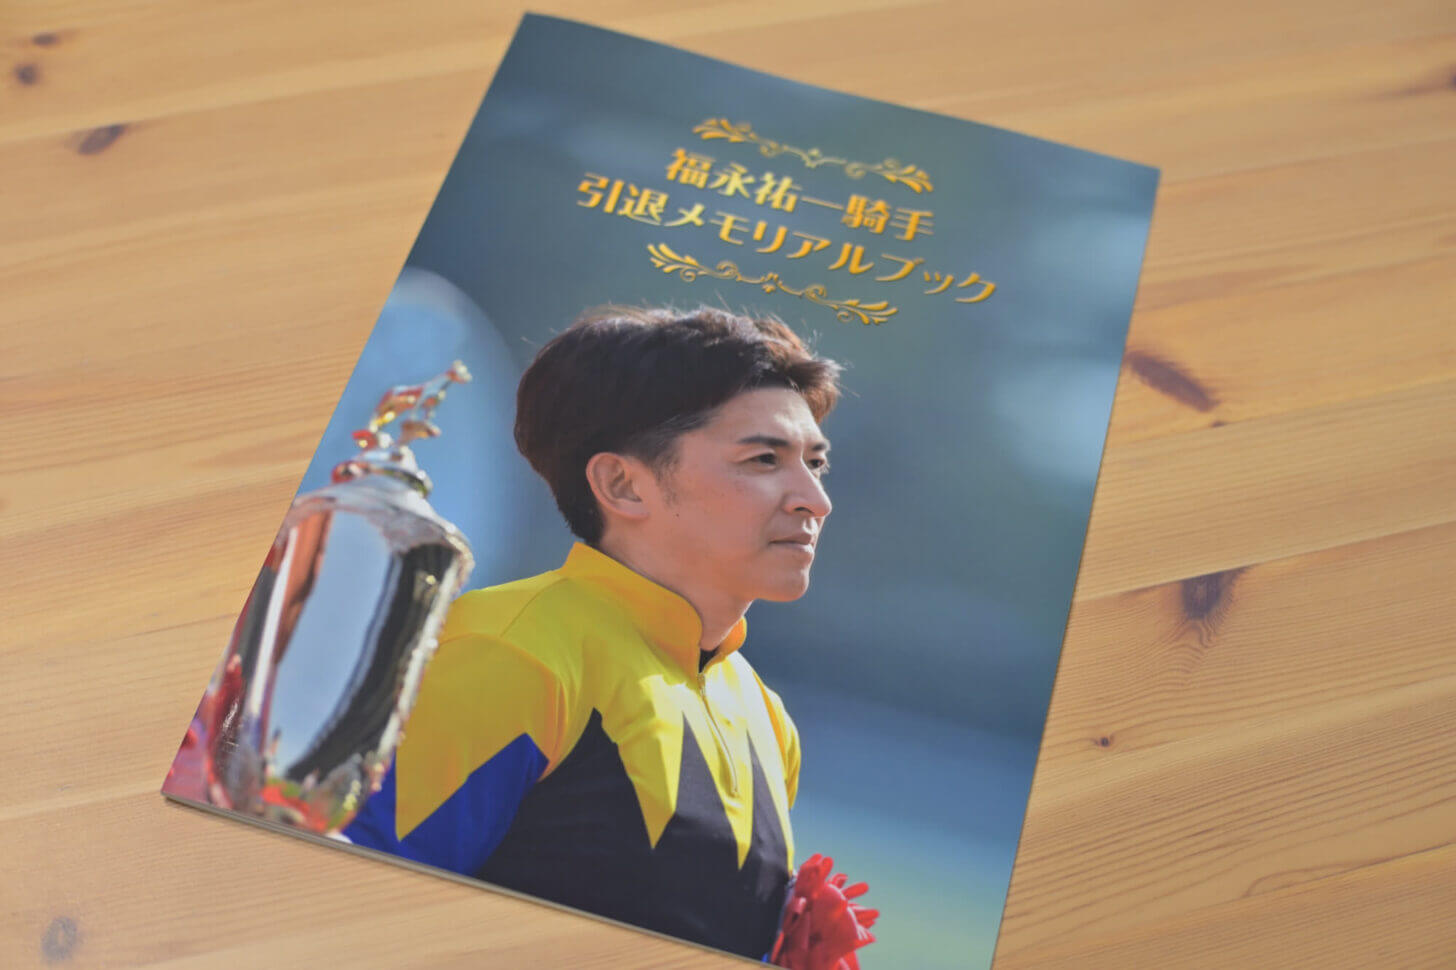 福永祐一騎手引退式の日に阪神競馬場で配られた「福永祐一騎手 引退メモリアルブック」